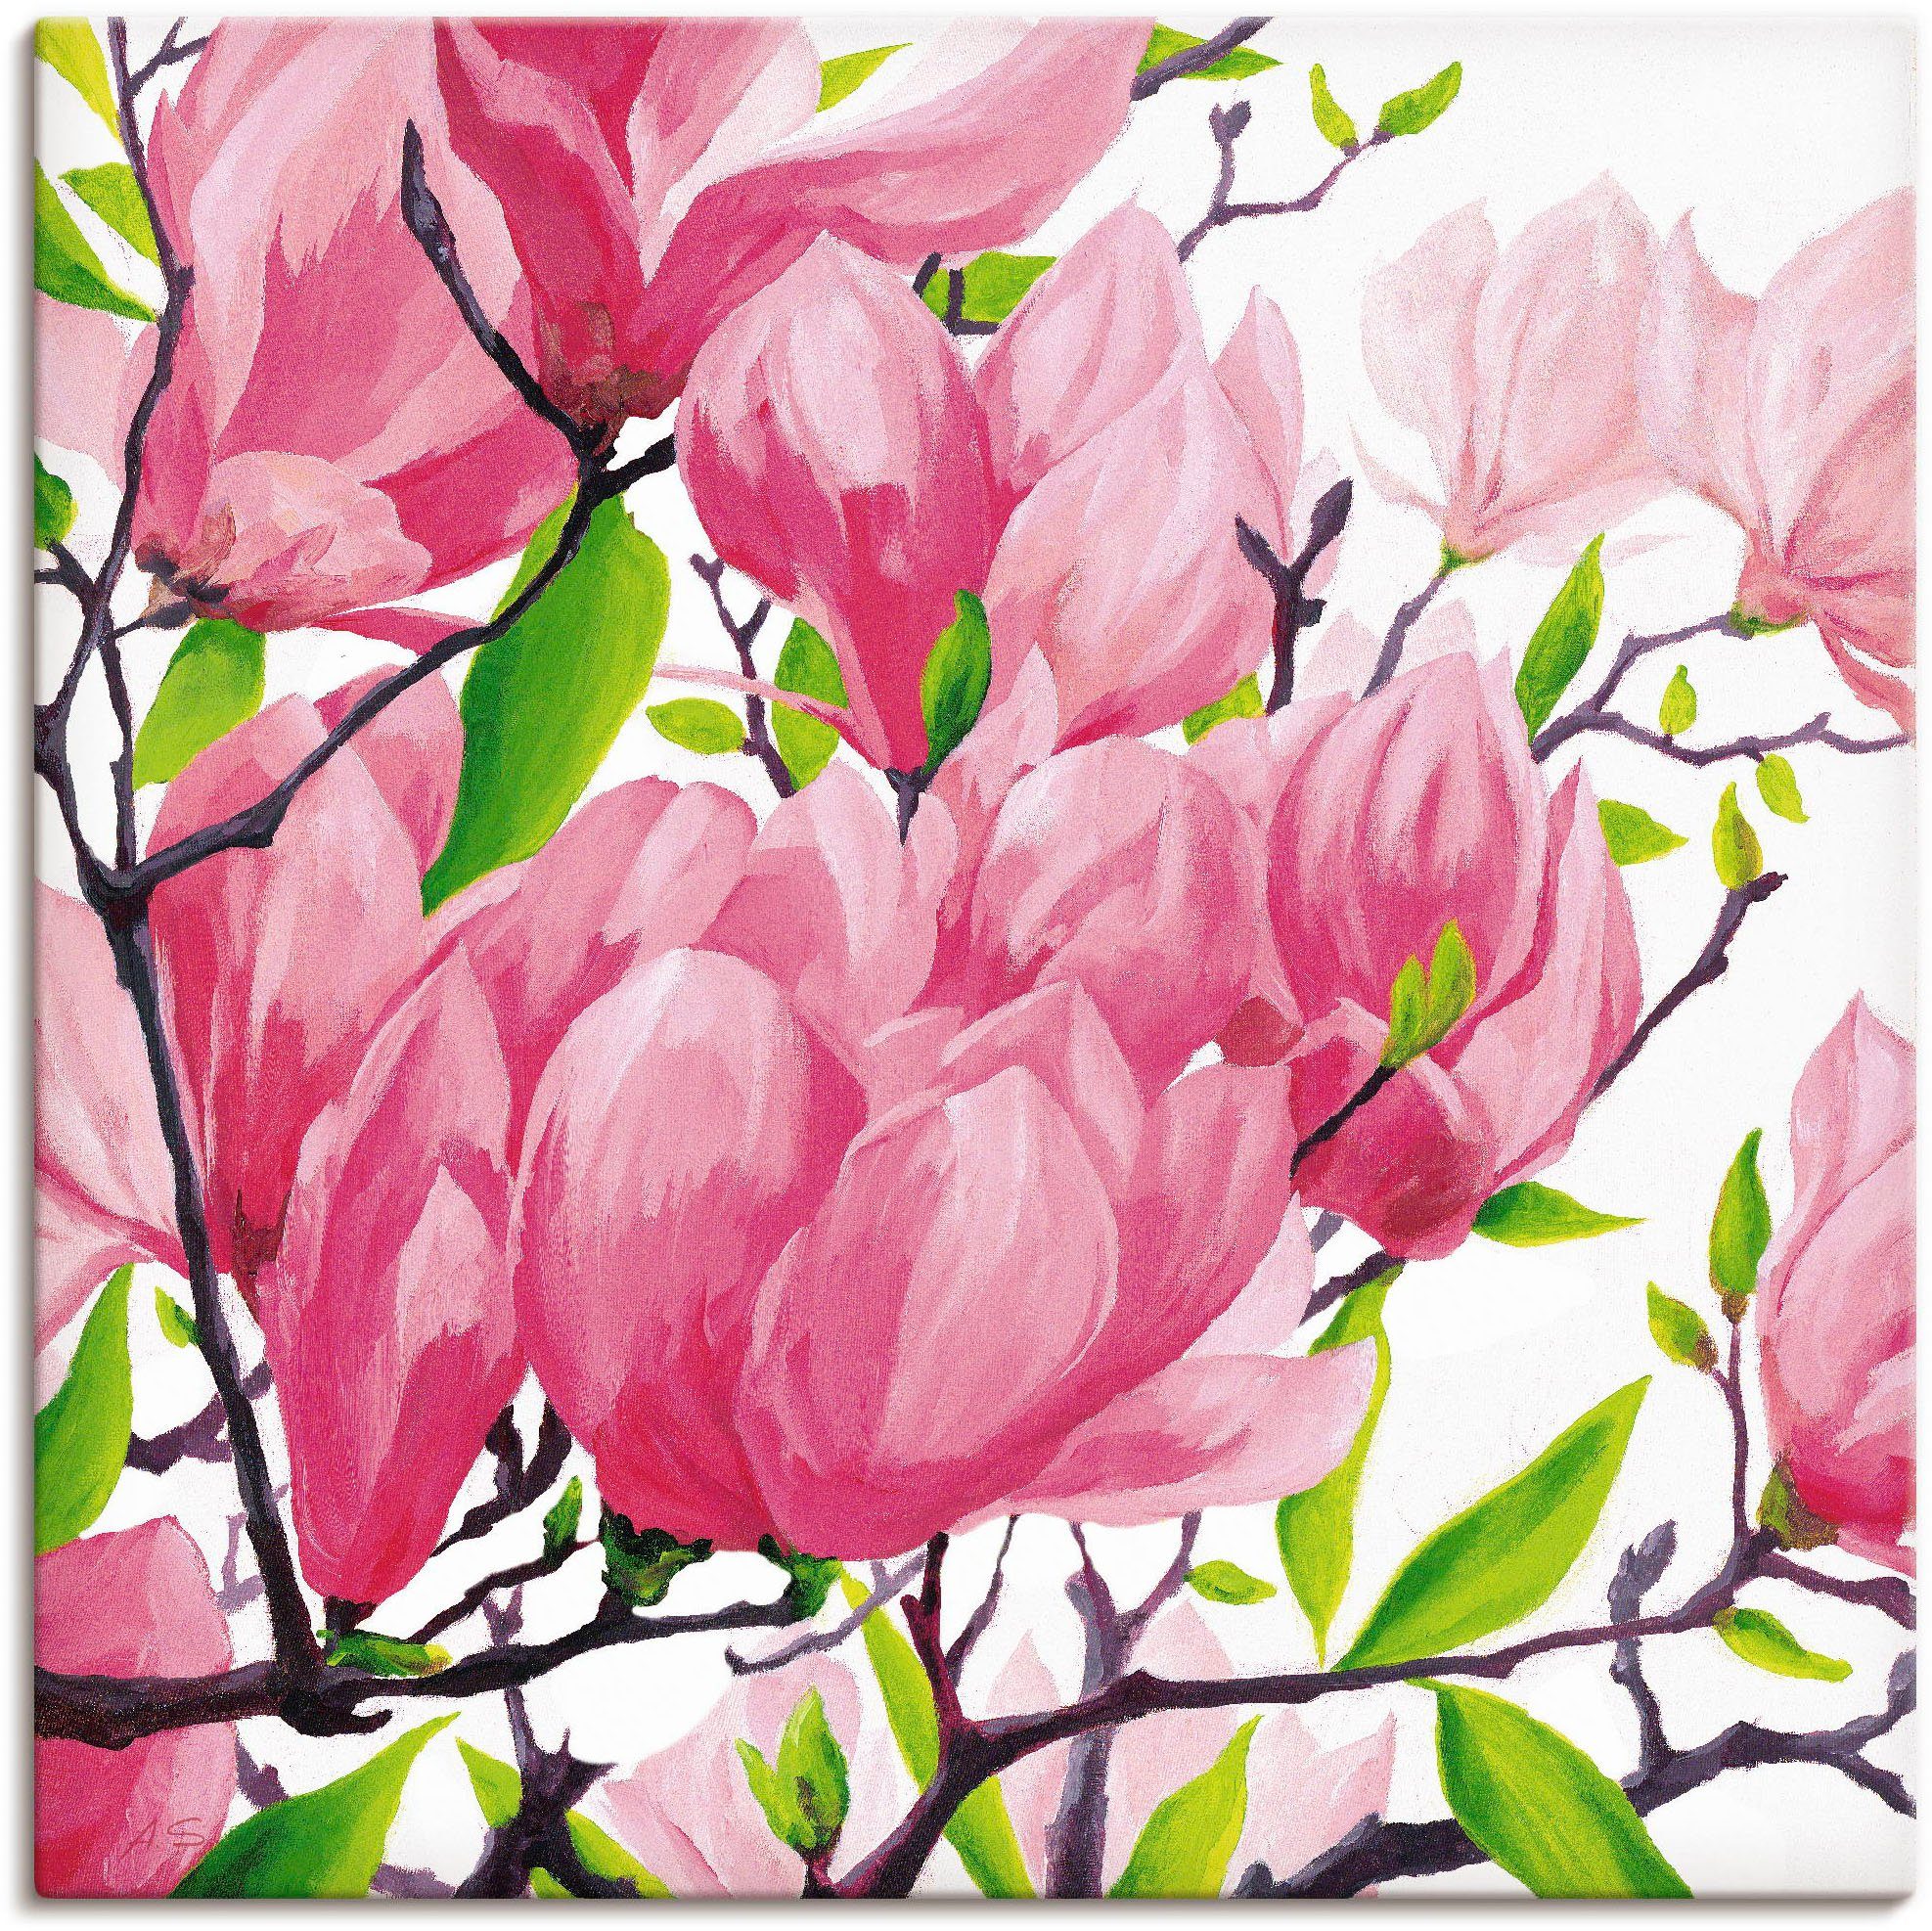 Artland Artprint Pinkkleurige magnolia's in vele afmetingen & productsoorten - artprint van aluminium / artprint voor buiten, artprint op linnen, poster, muursticker / wandfolie oo